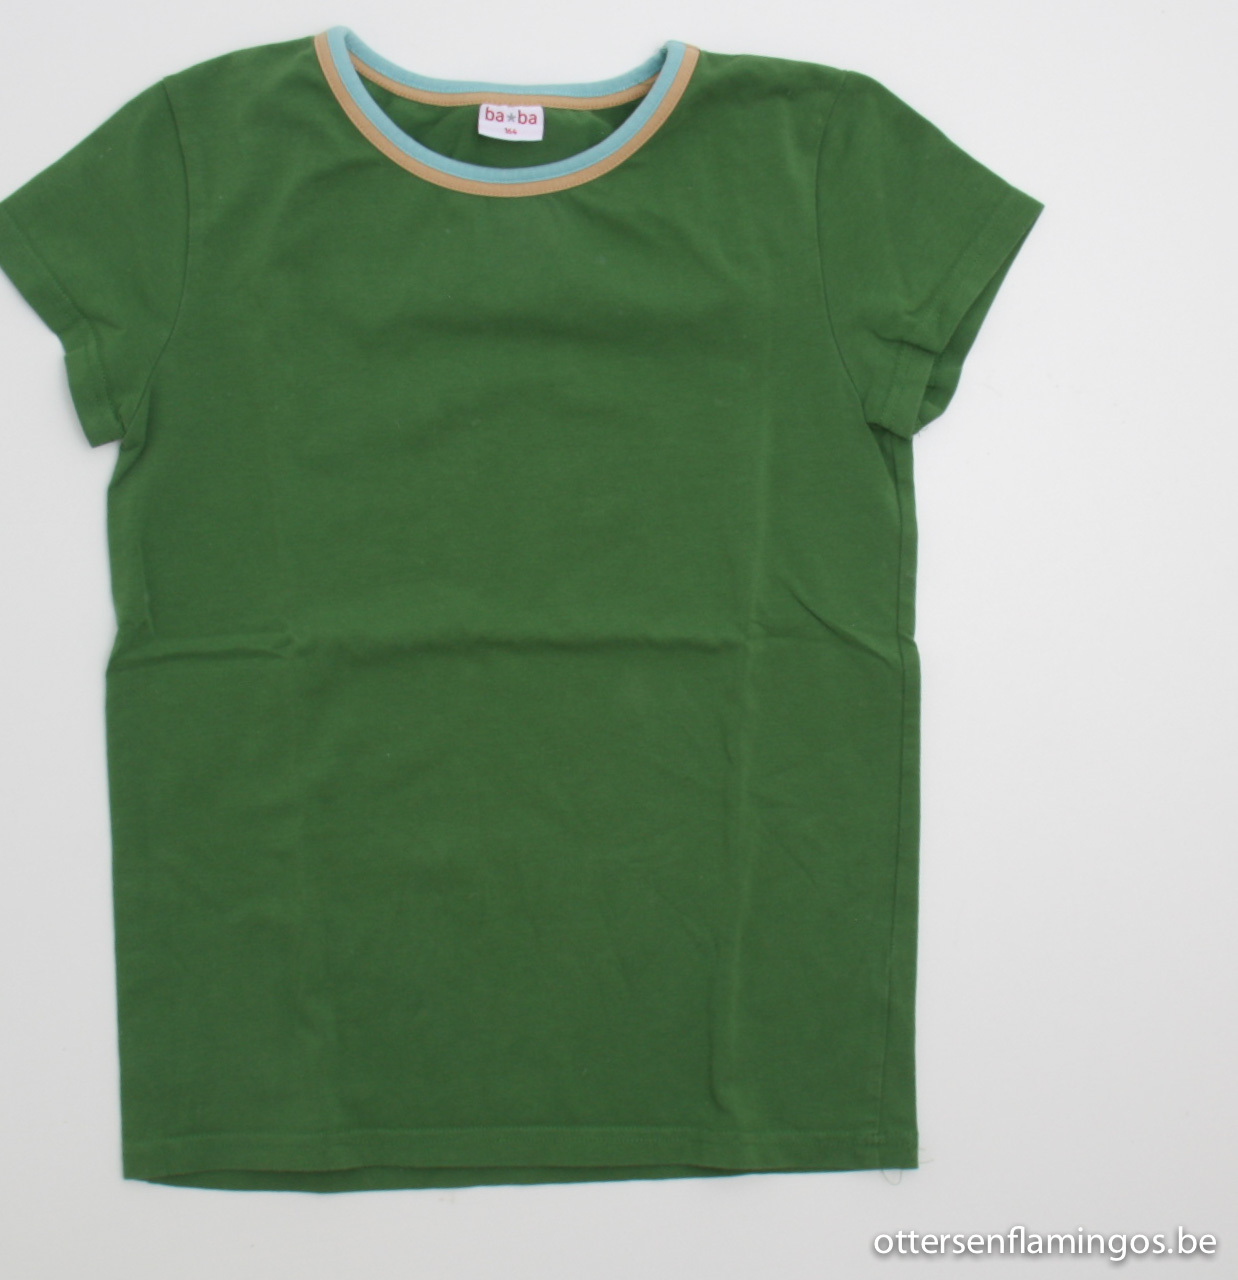 groene T shirt, Baba, 164